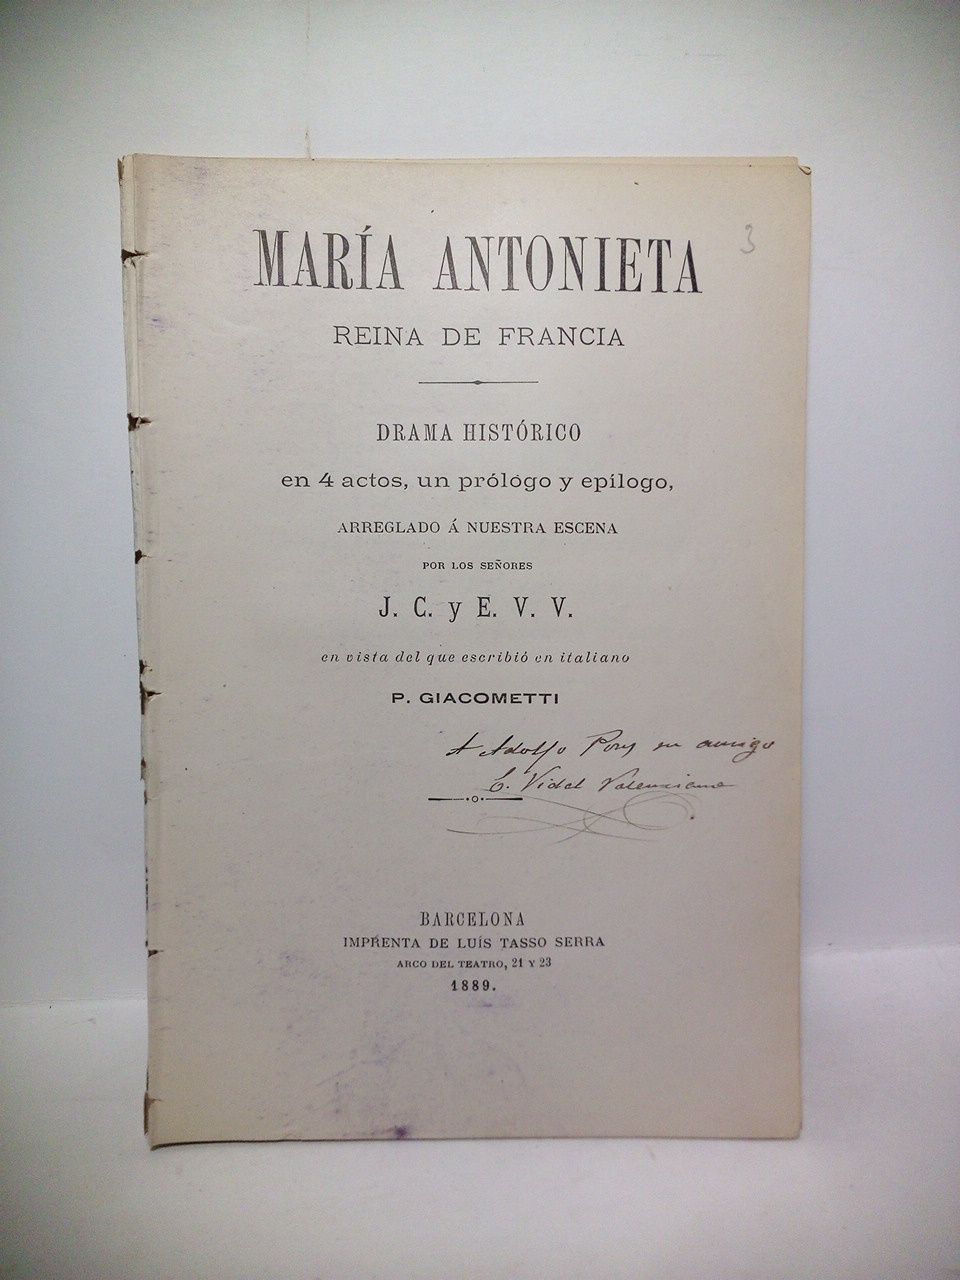 J. C. y E. V. V. (P. Giacometti, 1816-1882) - Mara Antonieta, Reina de Francia. (Drama histrico en cuatro actos, un prlogo y eplogo) /  Arreglado a nuestra escena, por los seores J. C. y E. V. V., en vista del que escribi en italiano P. Giacometti